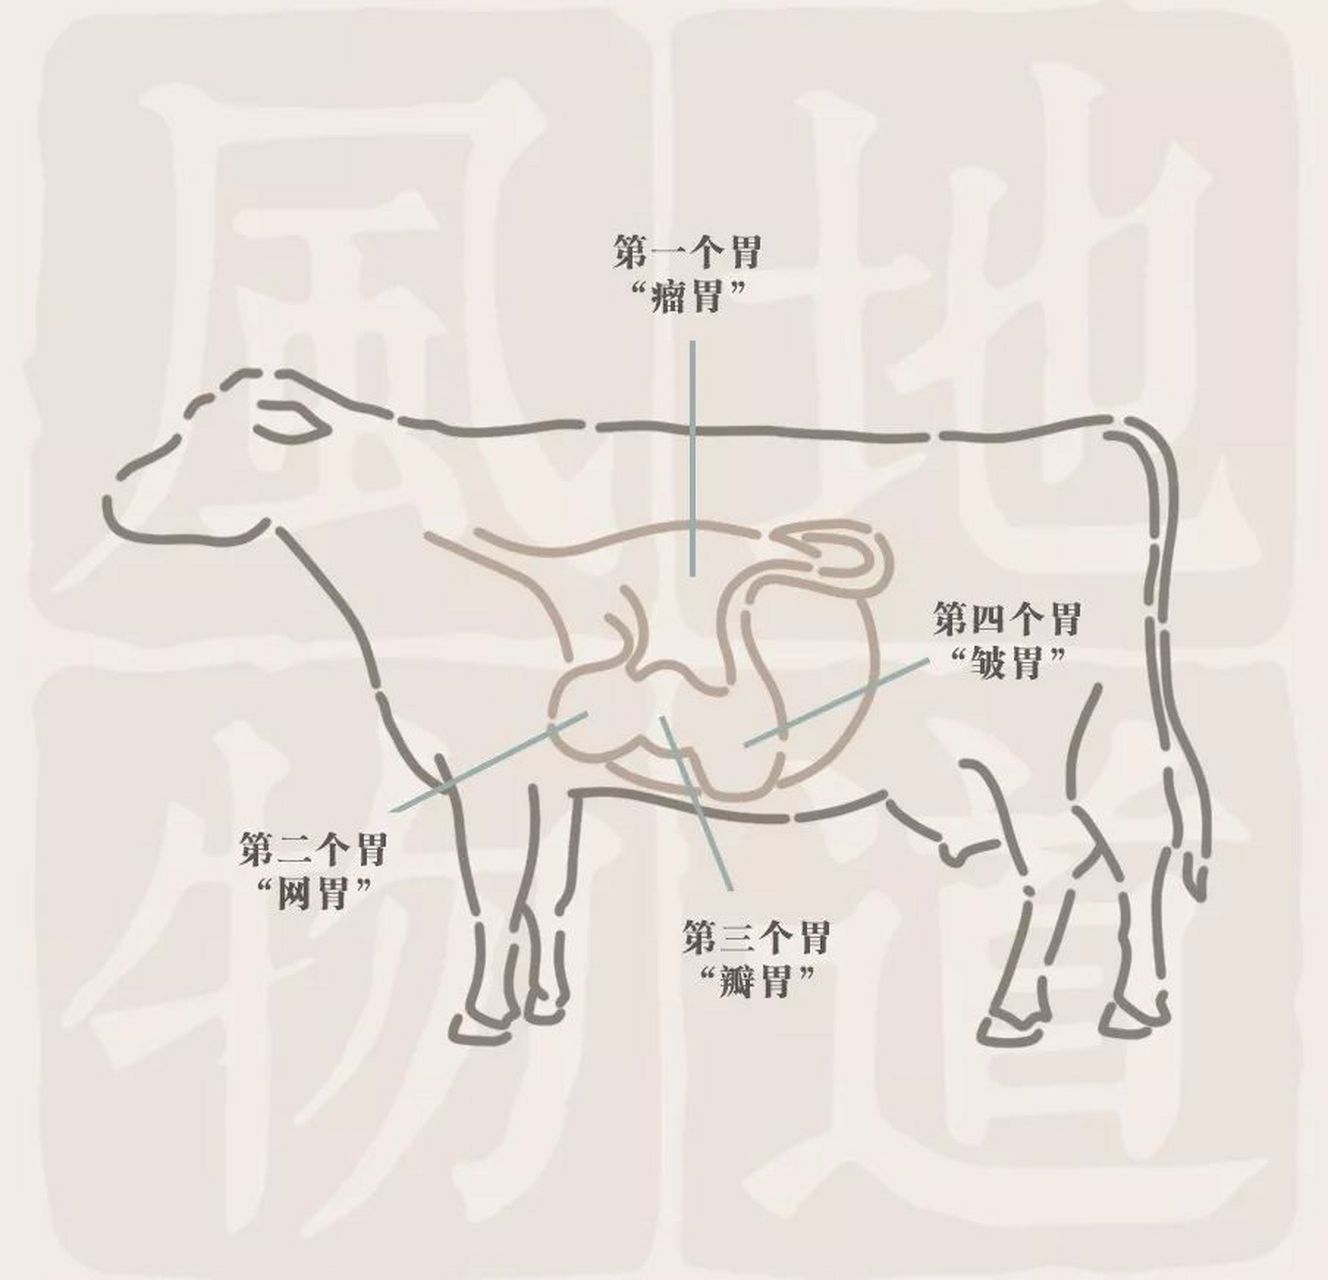 奶牛四胃位置图解图片